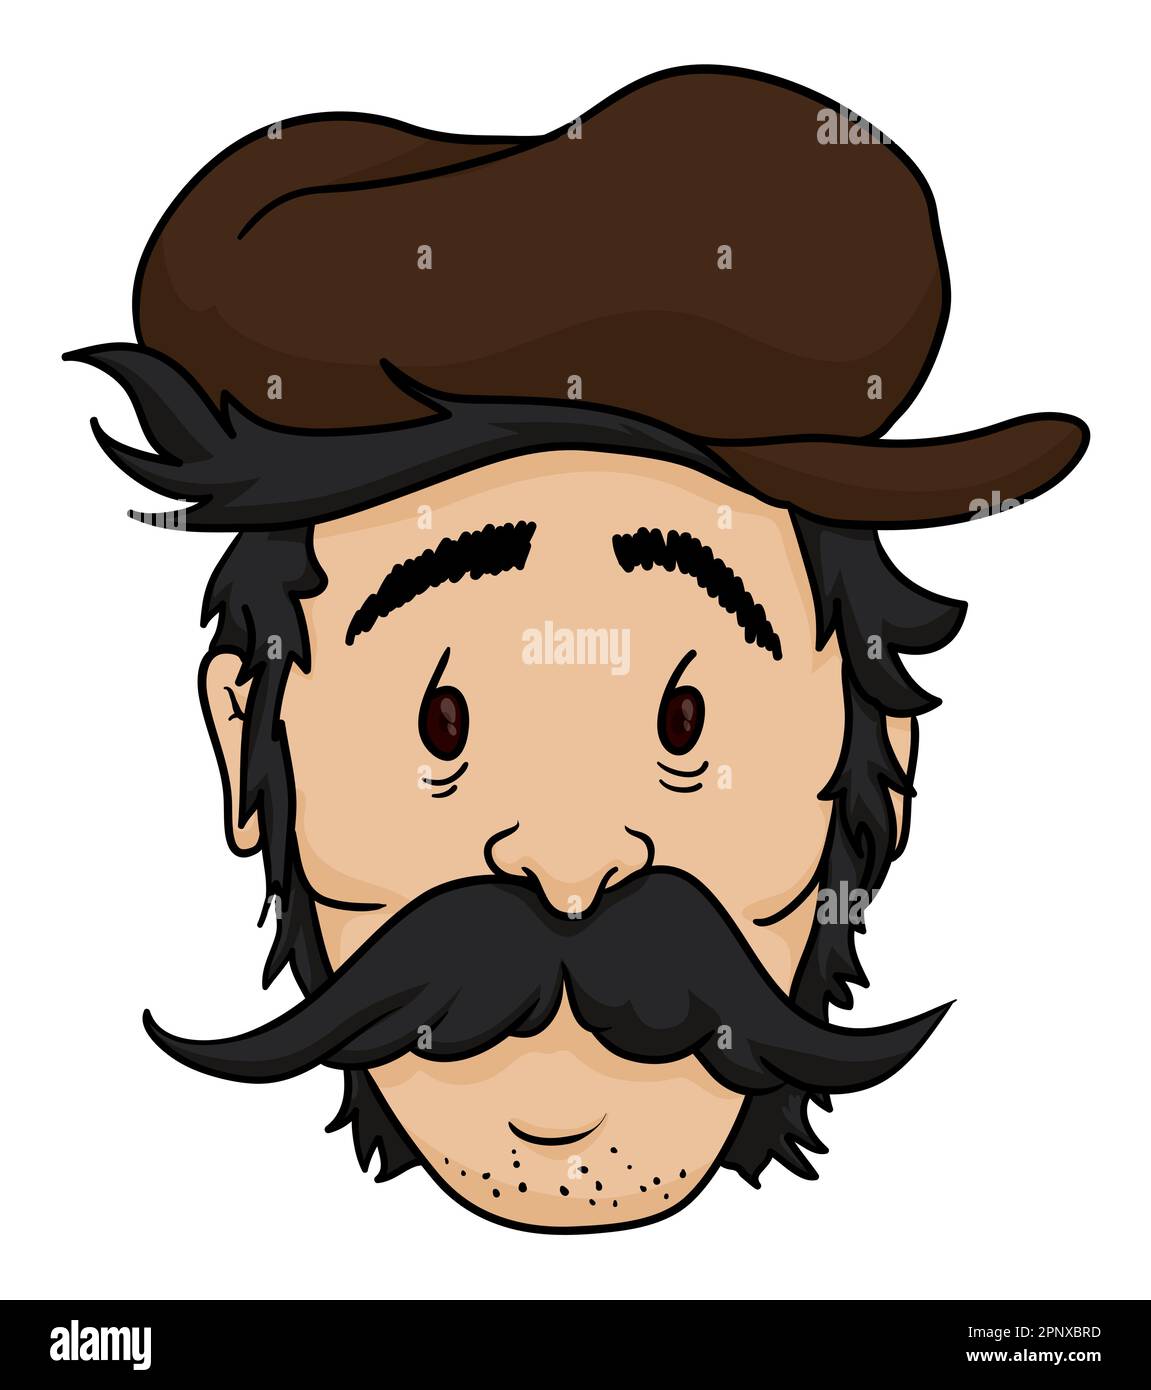 Ausgewachsenes männliches Gesicht mit schwarzem Haar und Schnurrbart, brauner Mütze und müder Geste. Cartoon-Design. Stock Vektor